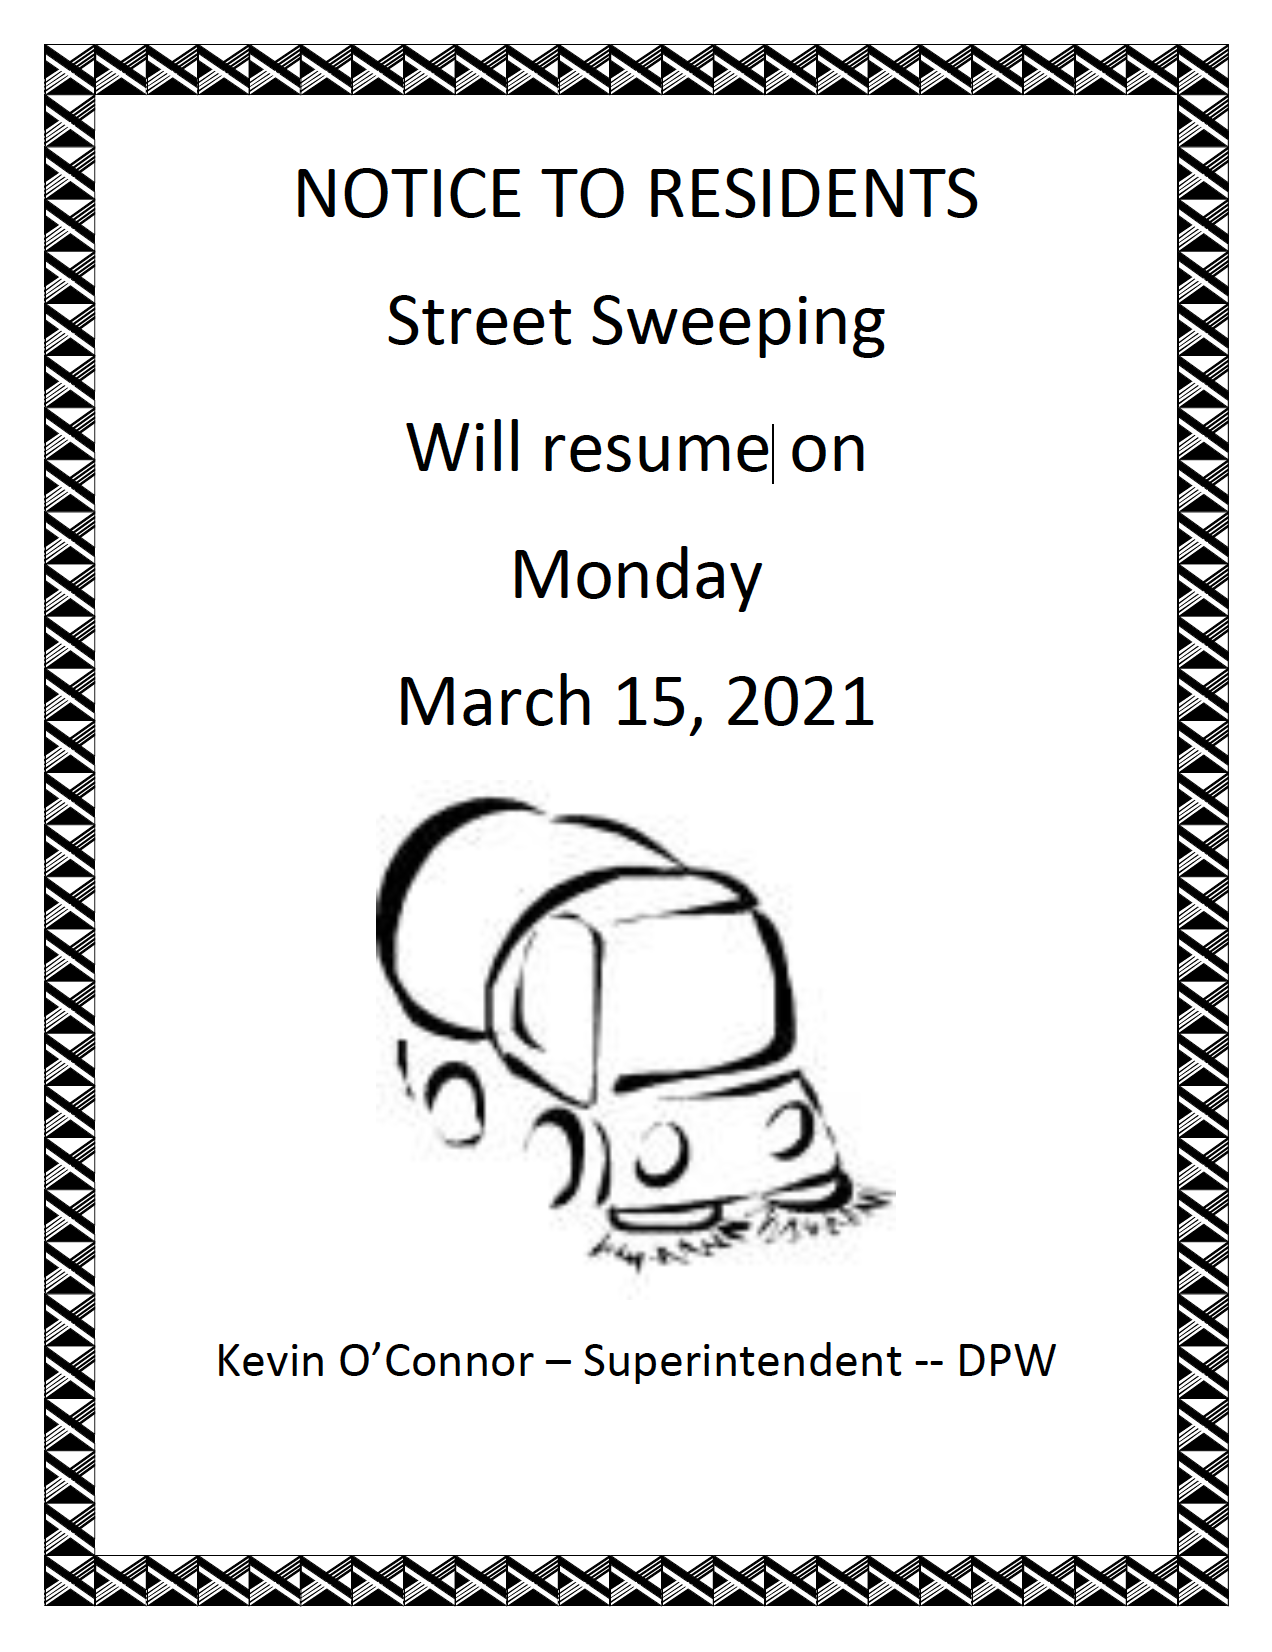 Street Sweeping Resumes